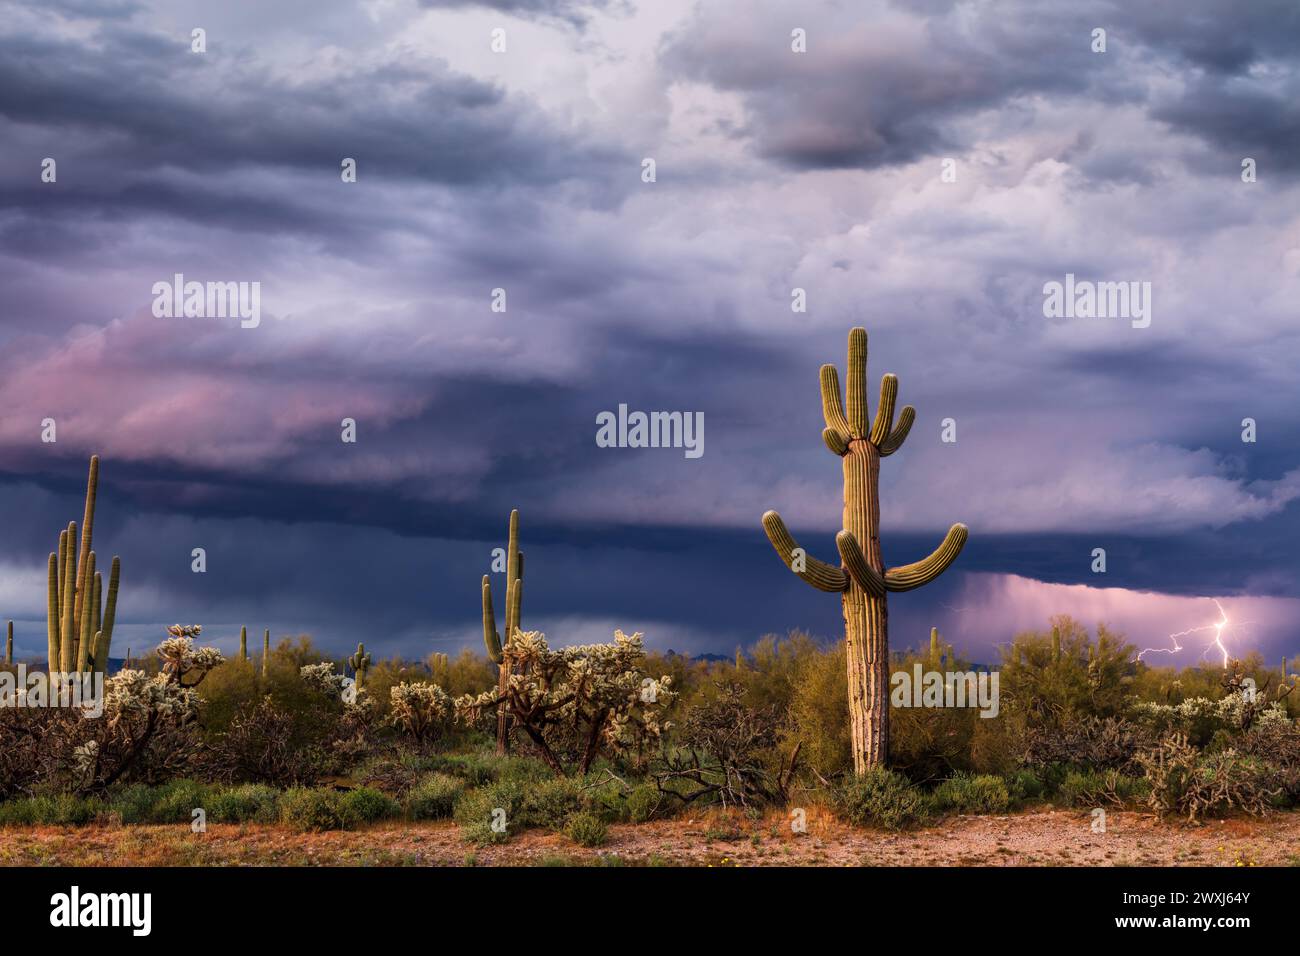 Malerische Sonora-Wüstenlandschaft mit Saguaro-Kakteen und dramatischen Sturmwolken in der Nähe von Florence, Arizona Stockfoto